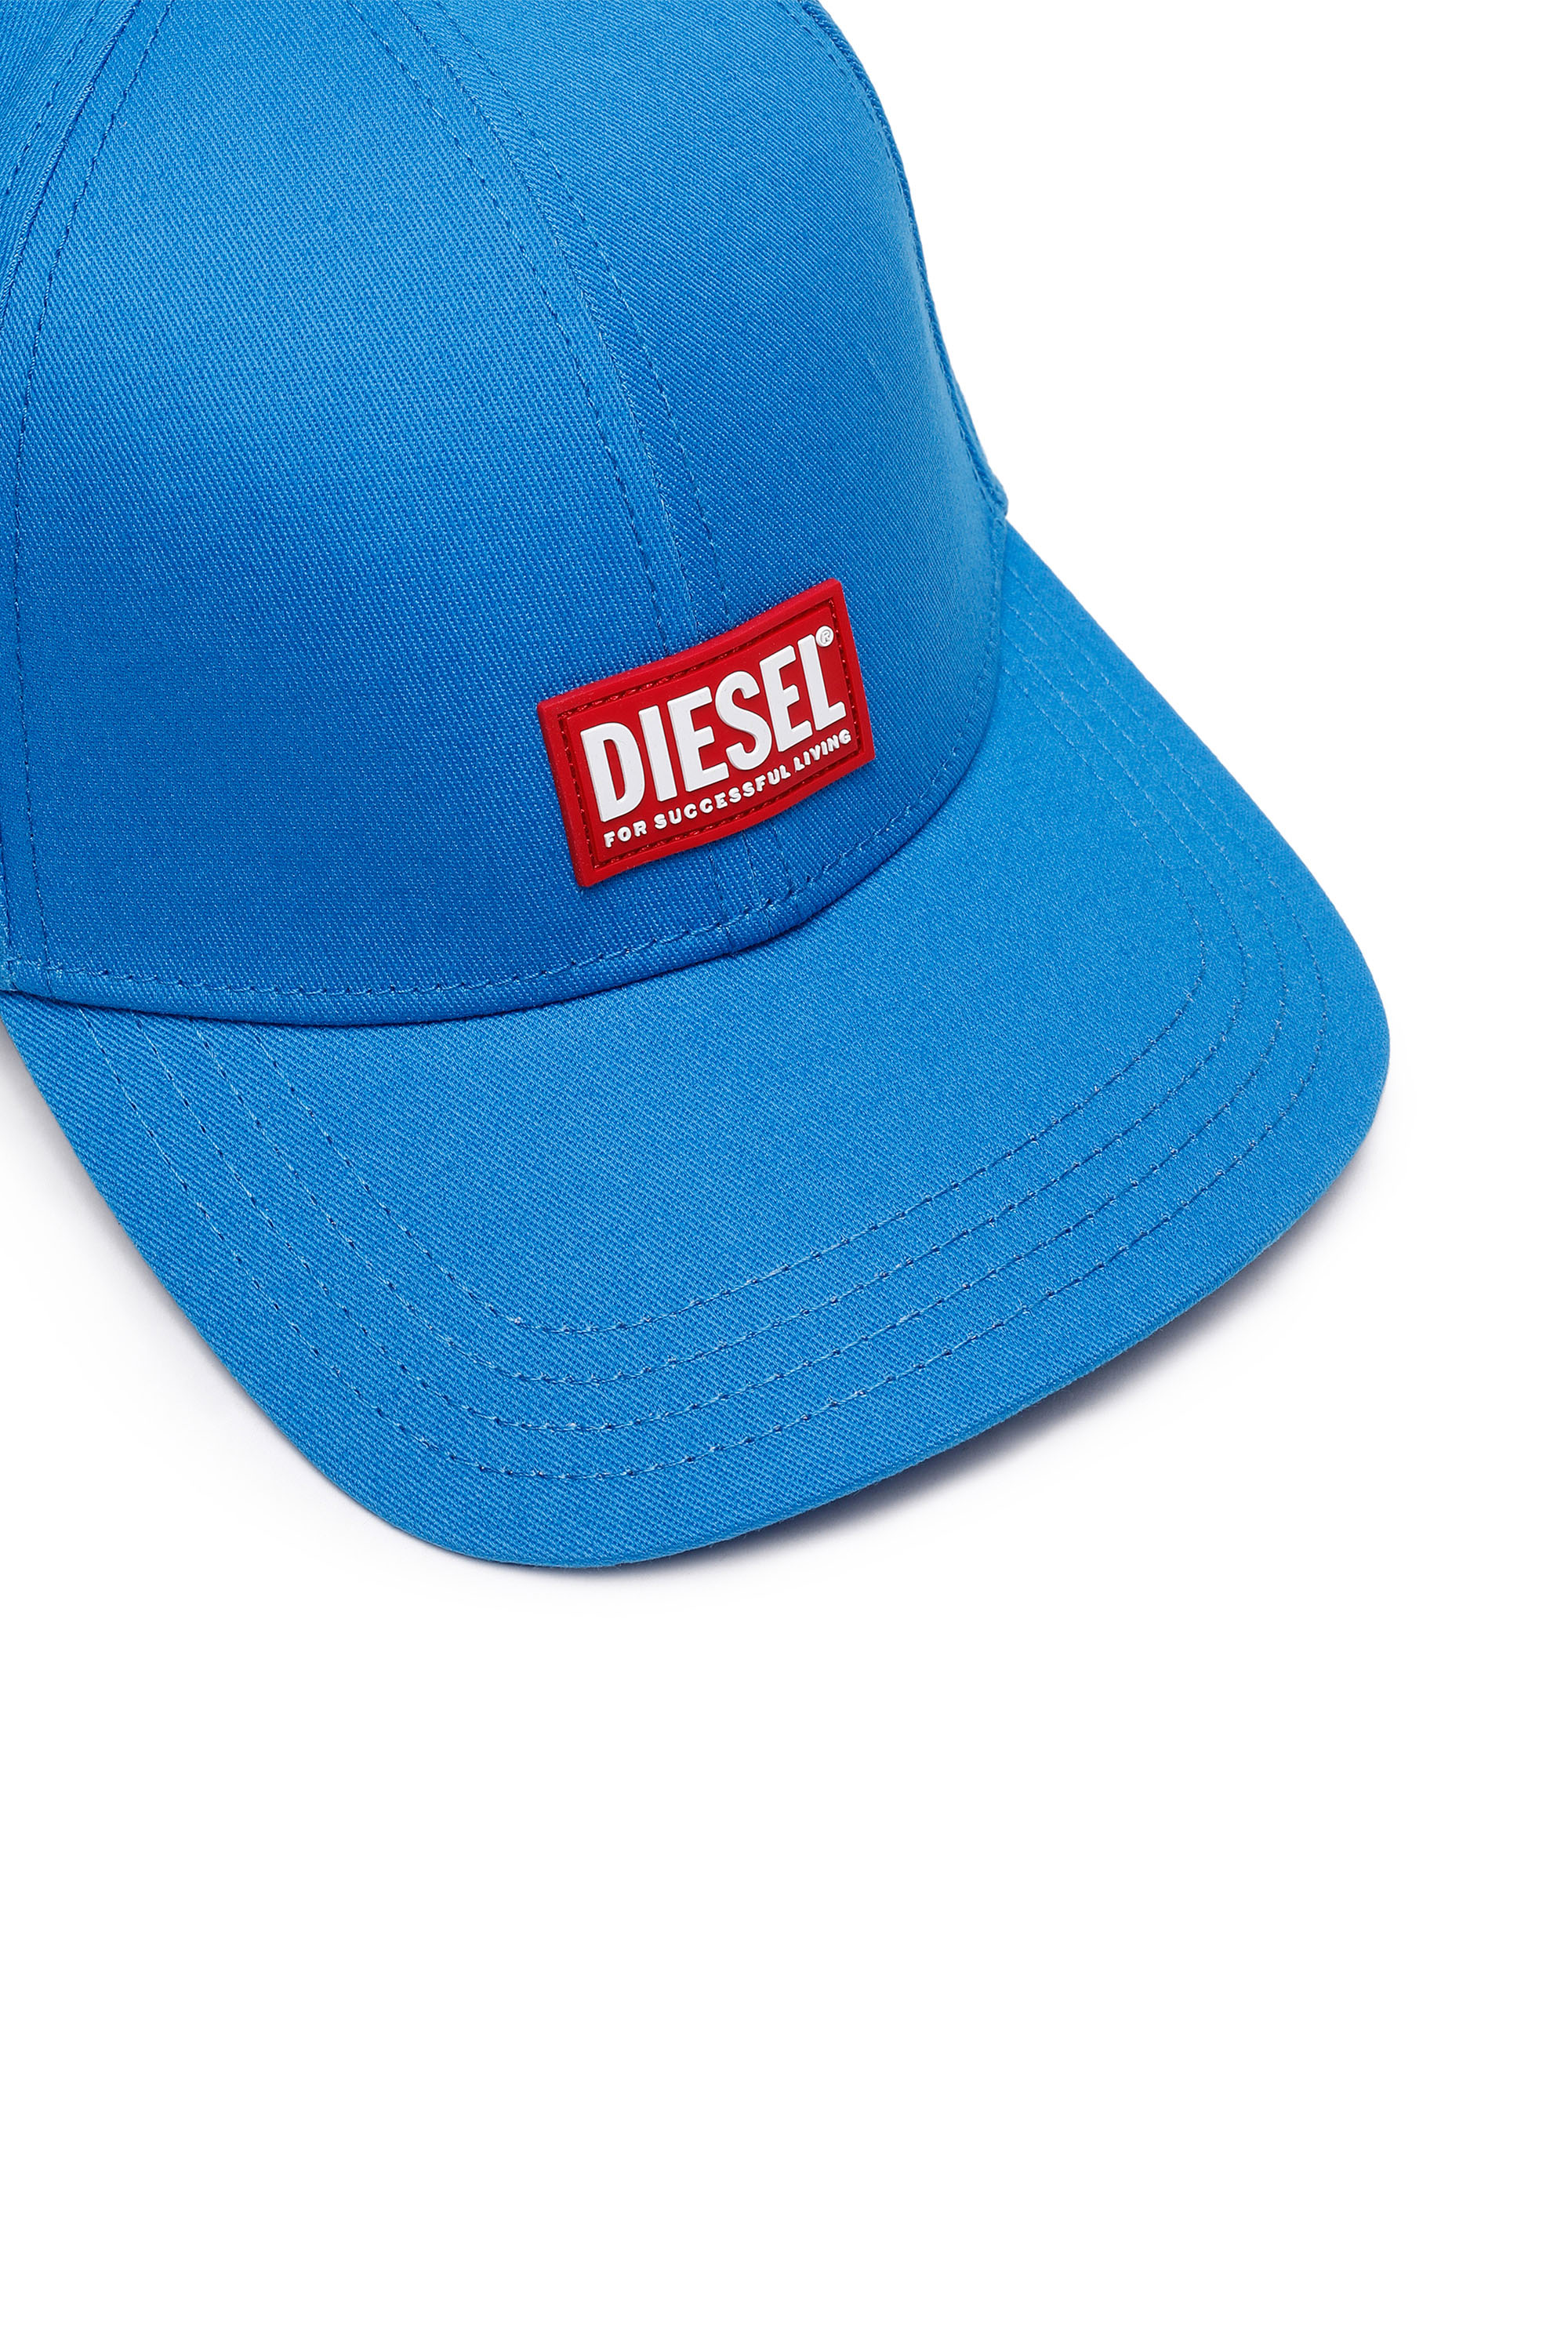 Diesel - CORRY-GUM, ブルー - Image 3